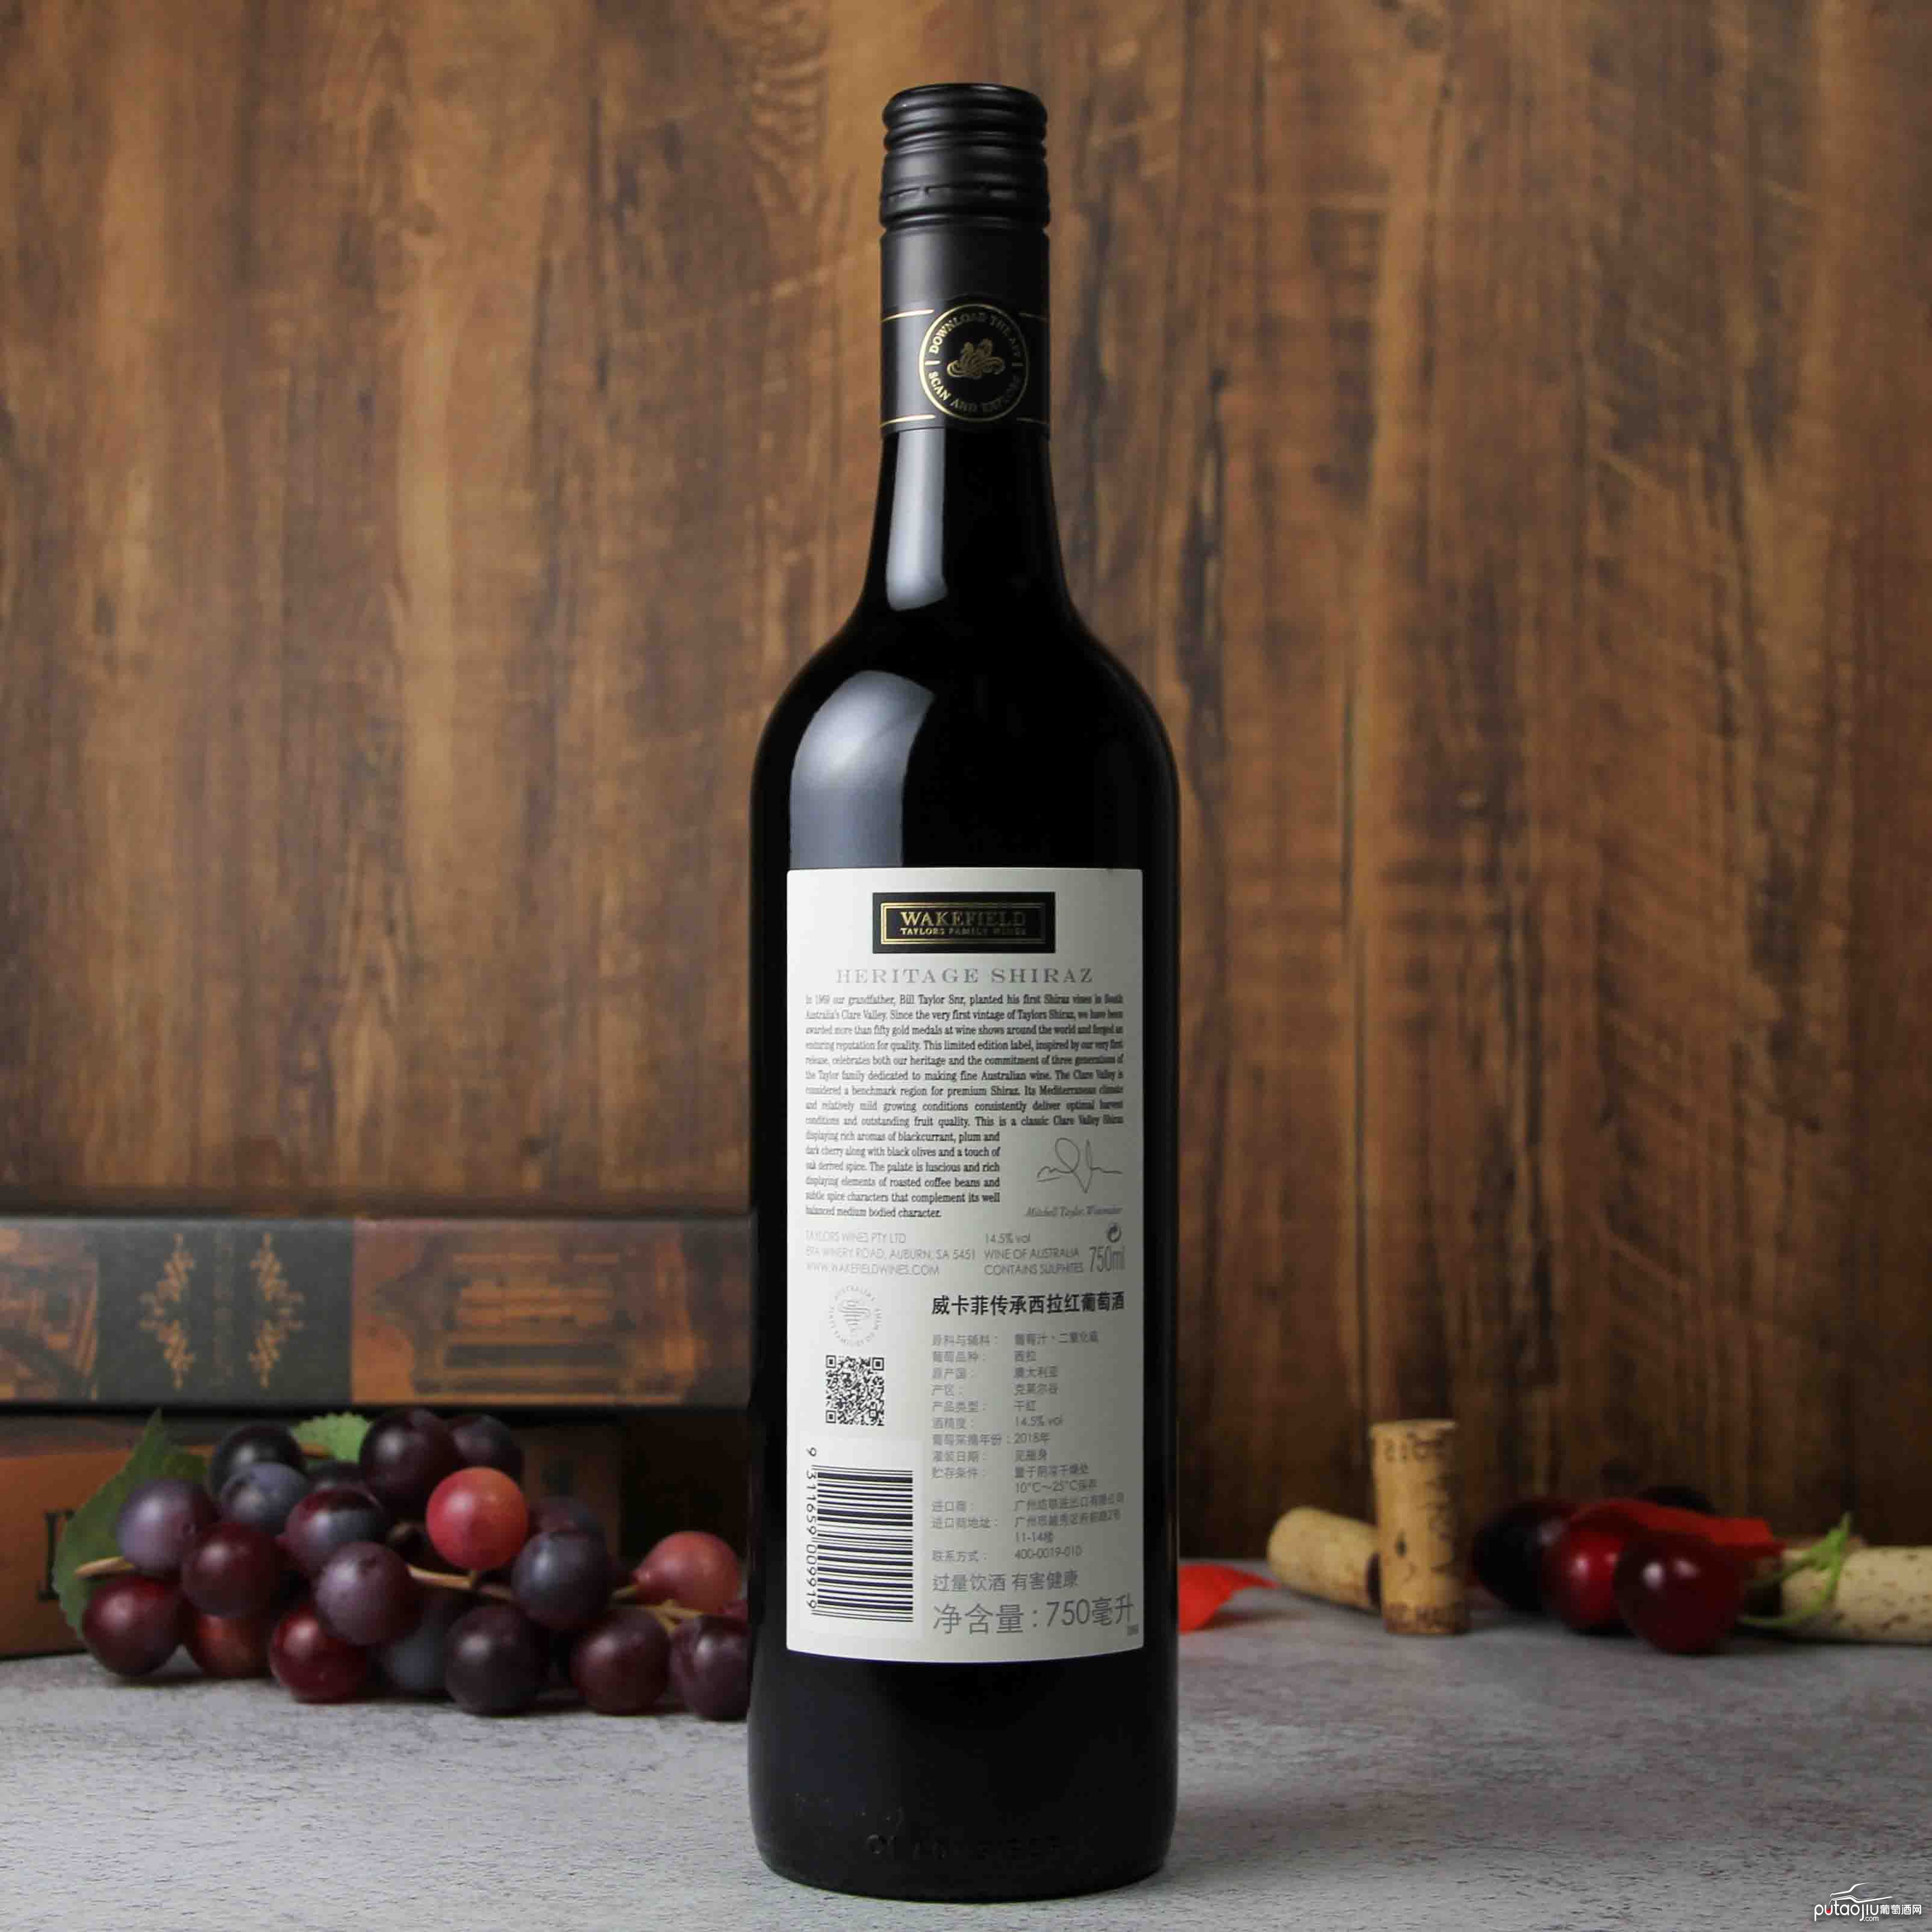 澳大利亚克莱尔谷传承西拉红葡萄酒2018